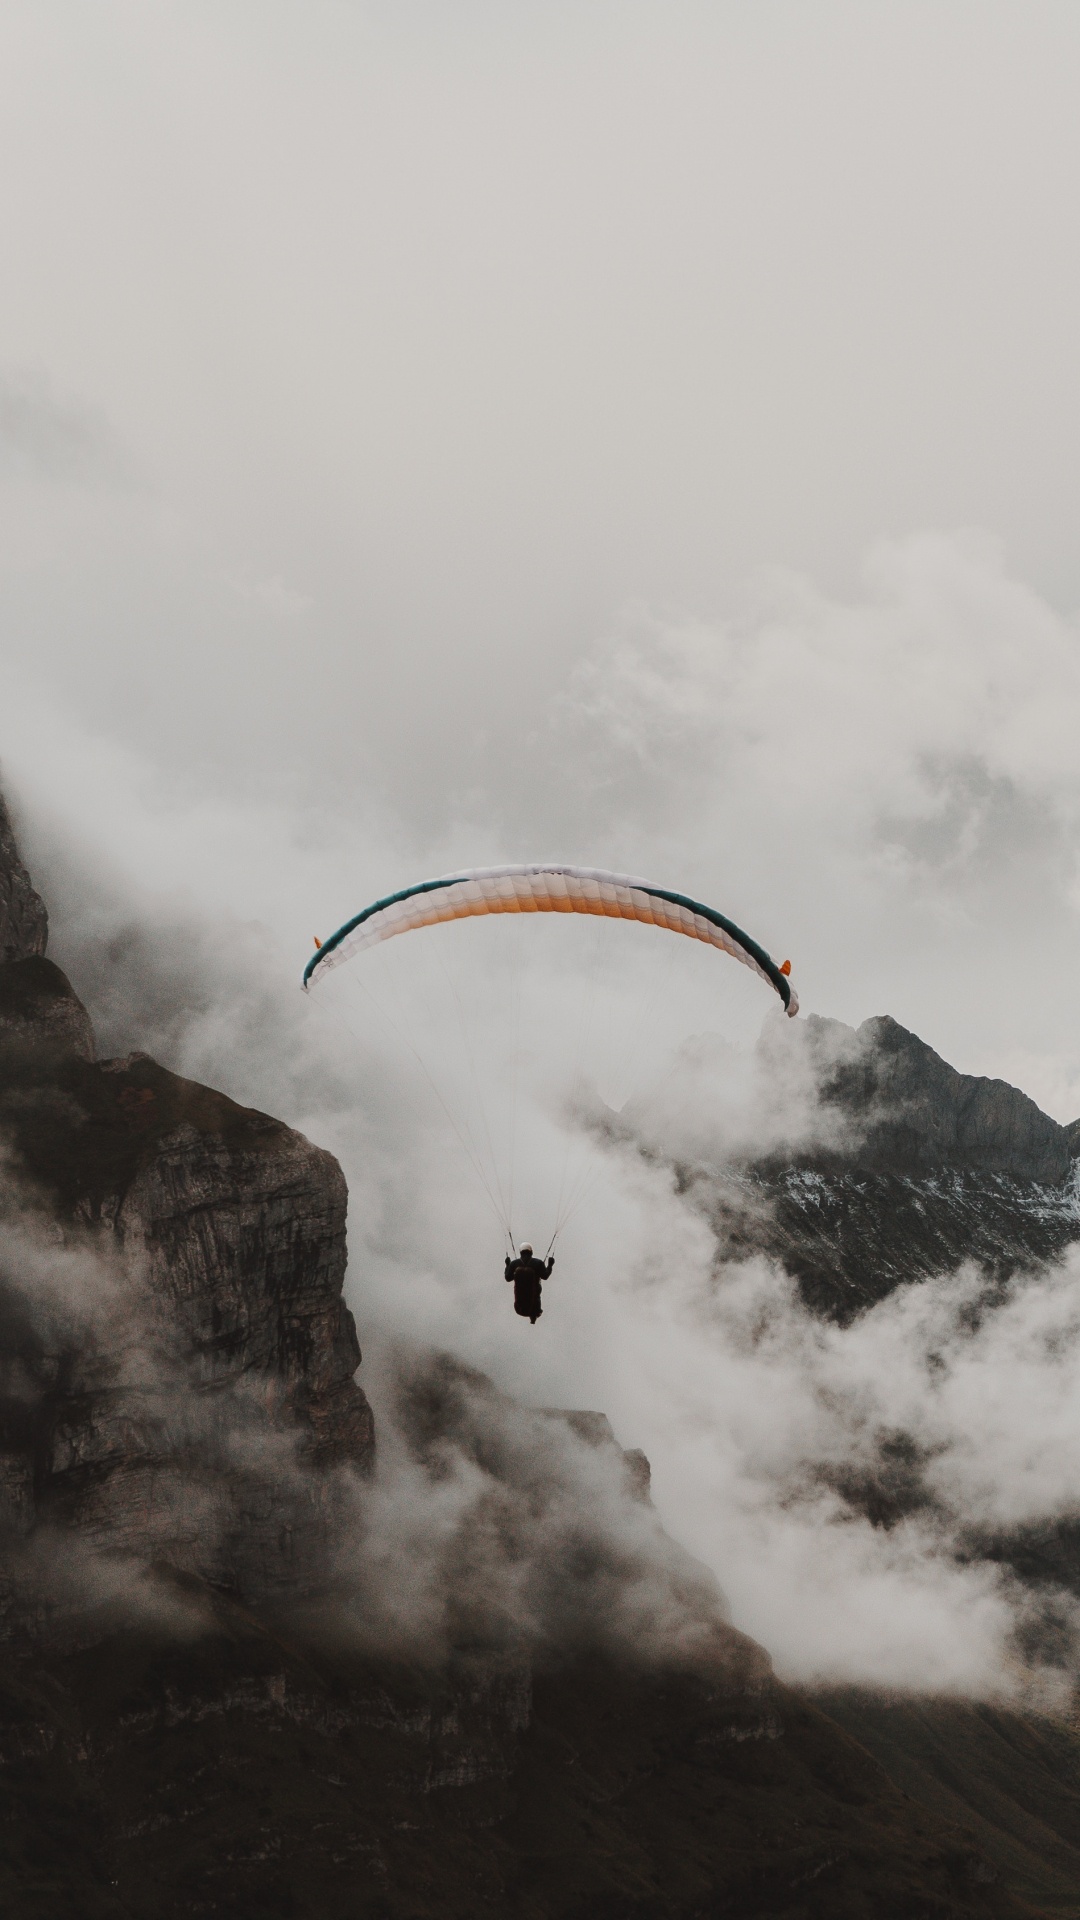 Personne Équitation Parachute Au-dessus de la Montagne Couverte de Neige. Wallpaper in 1080x1920 Resolution